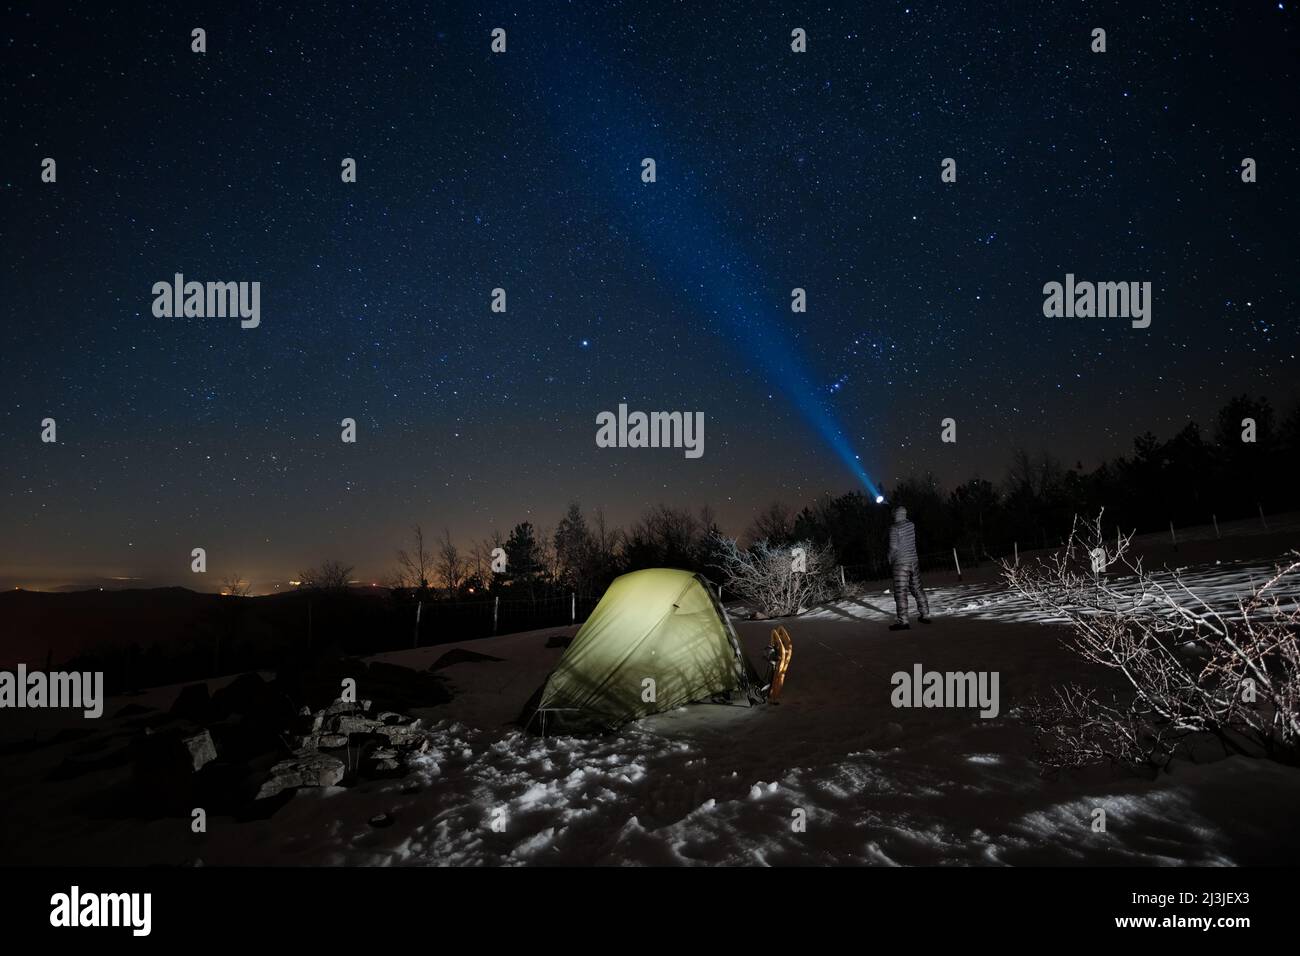 Uomo in piedi vicino alla tenda illuminata e puntando la torcia blu al cielo stellato in inverno Nebrodi Park, Sicilia Foto Stock